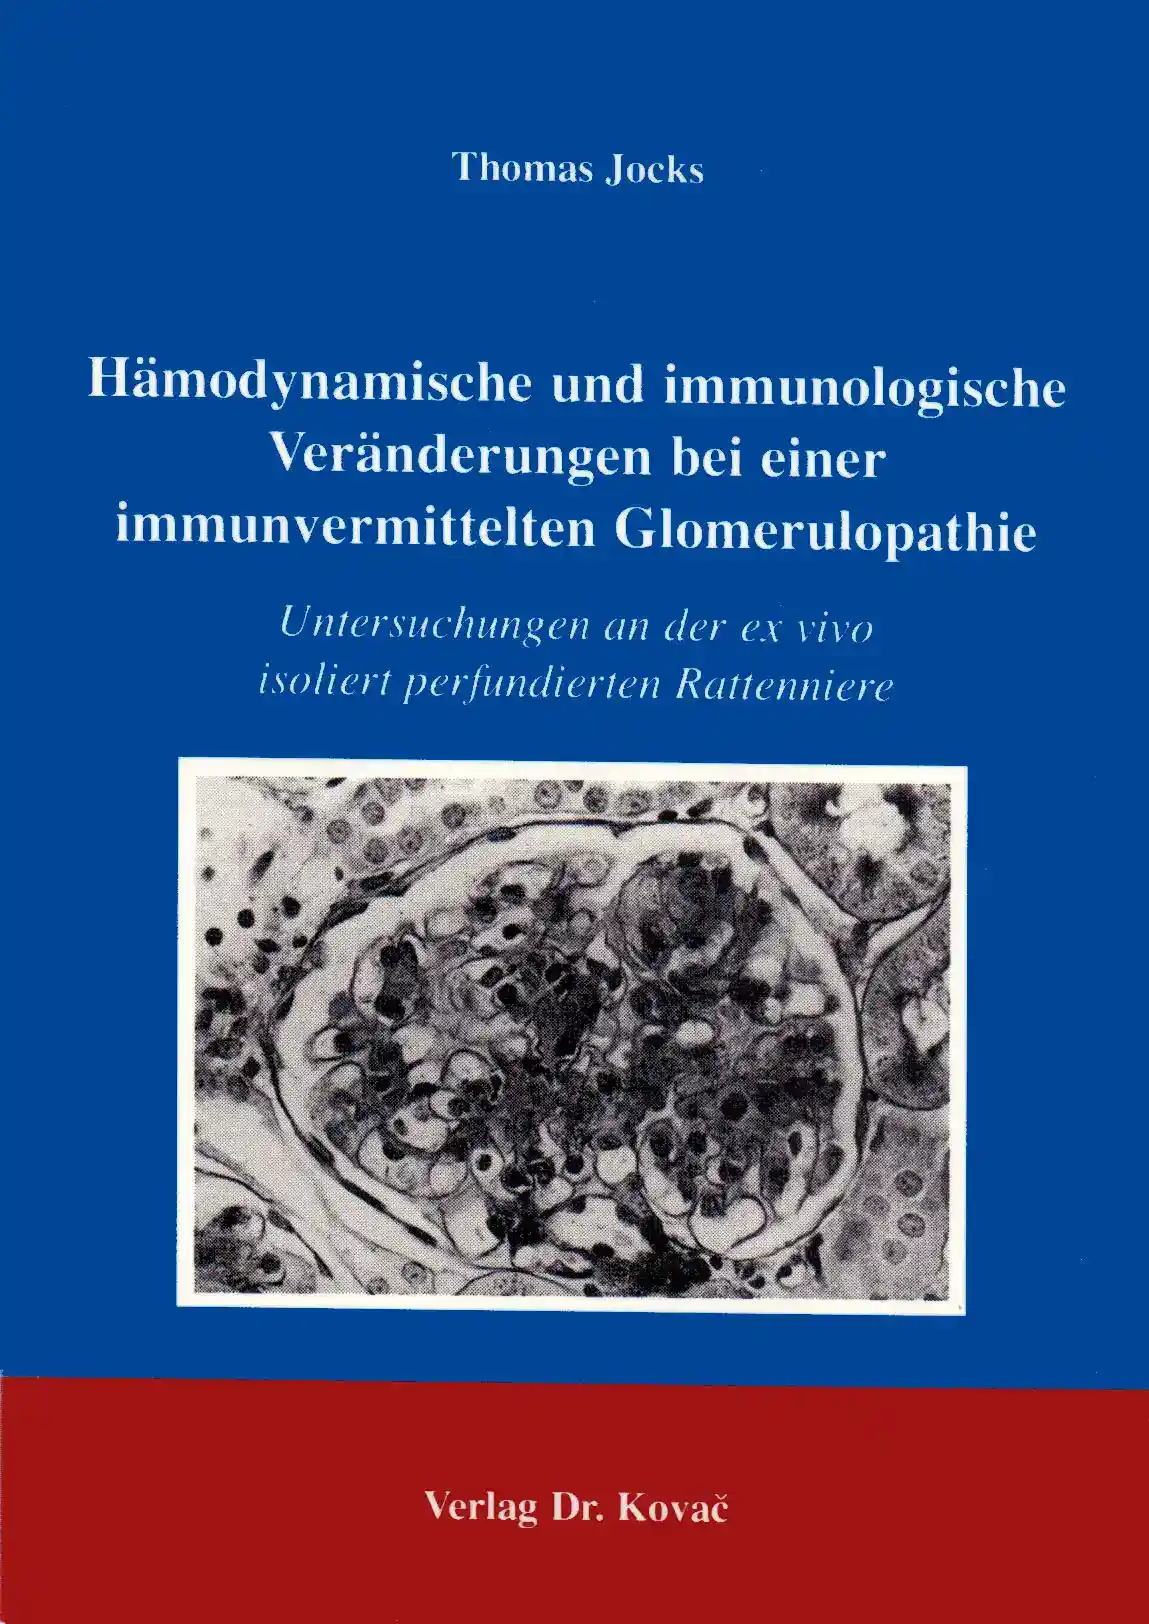 Hämodynamische und immunologische Veränderungen bei einer immunvermittelten Glomerulopathie (Forschungsarbeit)